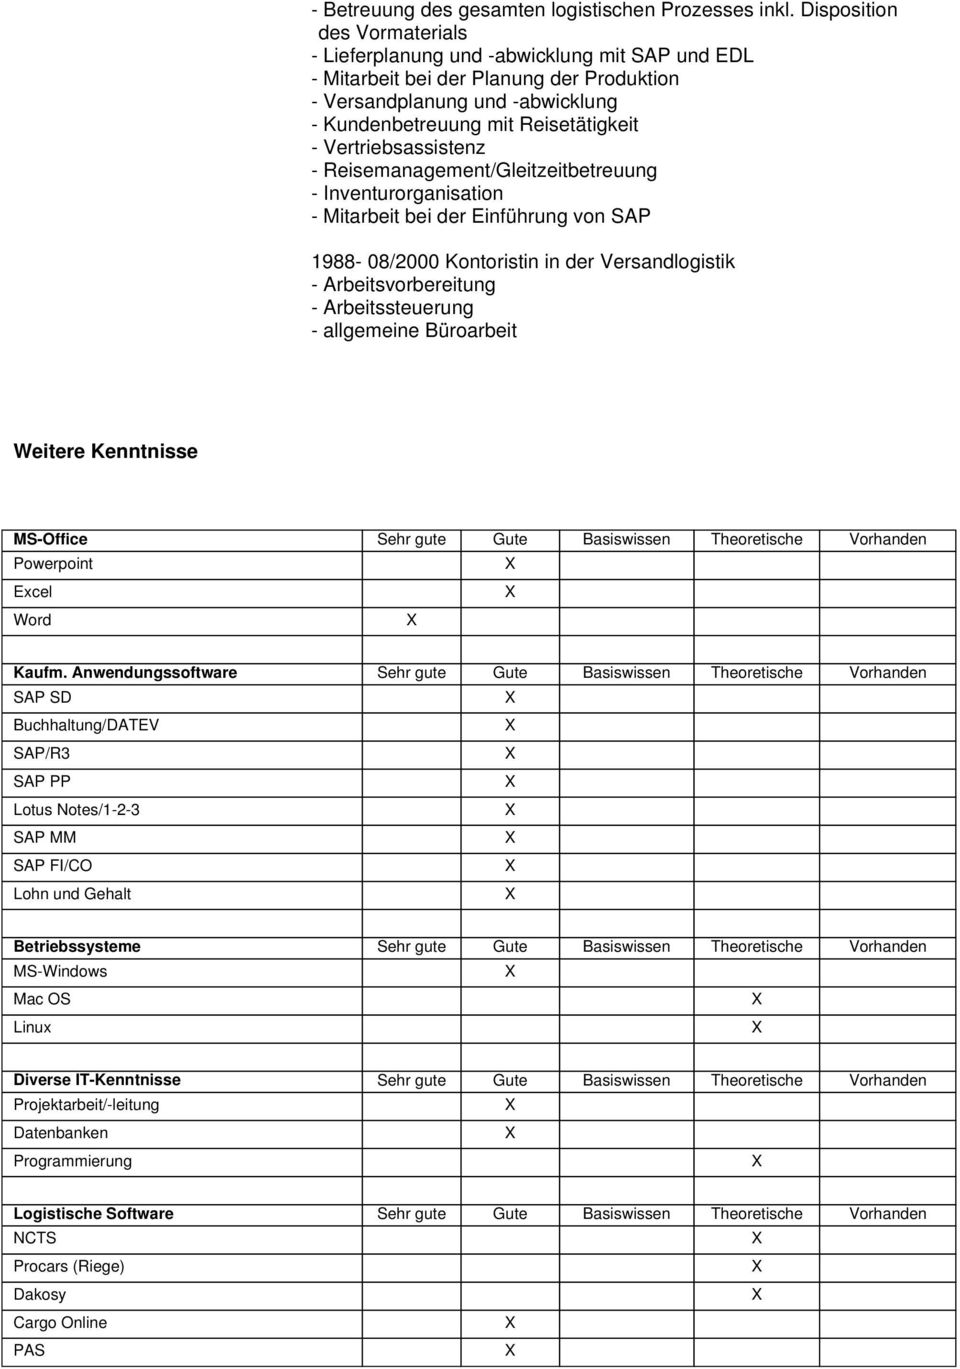 Vertriebsassistenz - Reisemanagement/Gleitzeitbetreuung - Inventurorganisation - Mitarbeit bei der Einführung von SAP 1988-08/2000 Kontoristin in der Versandlogistik - Arbeitsvorbereitung -